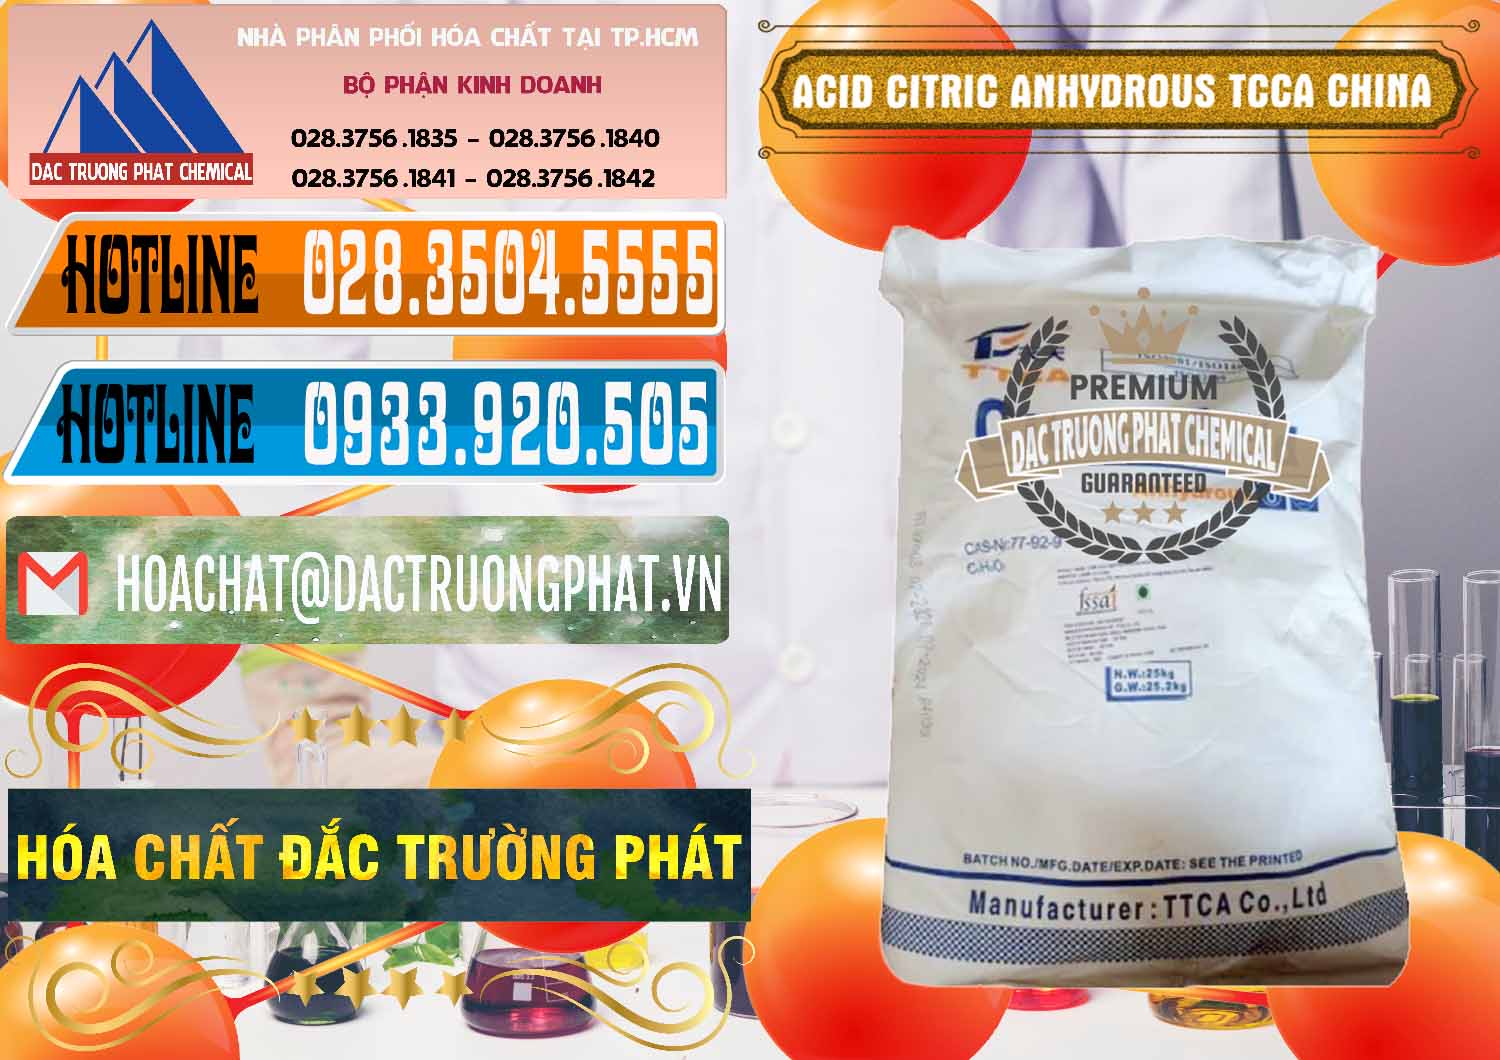 Cty chuyên nhập khẩu & bán Acid Citric - Axit Citric Anhydrous TCCA Trung Quốc China - 0442 - Đơn vị chuyên bán - phân phối hóa chất tại TP.HCM - stmp.net